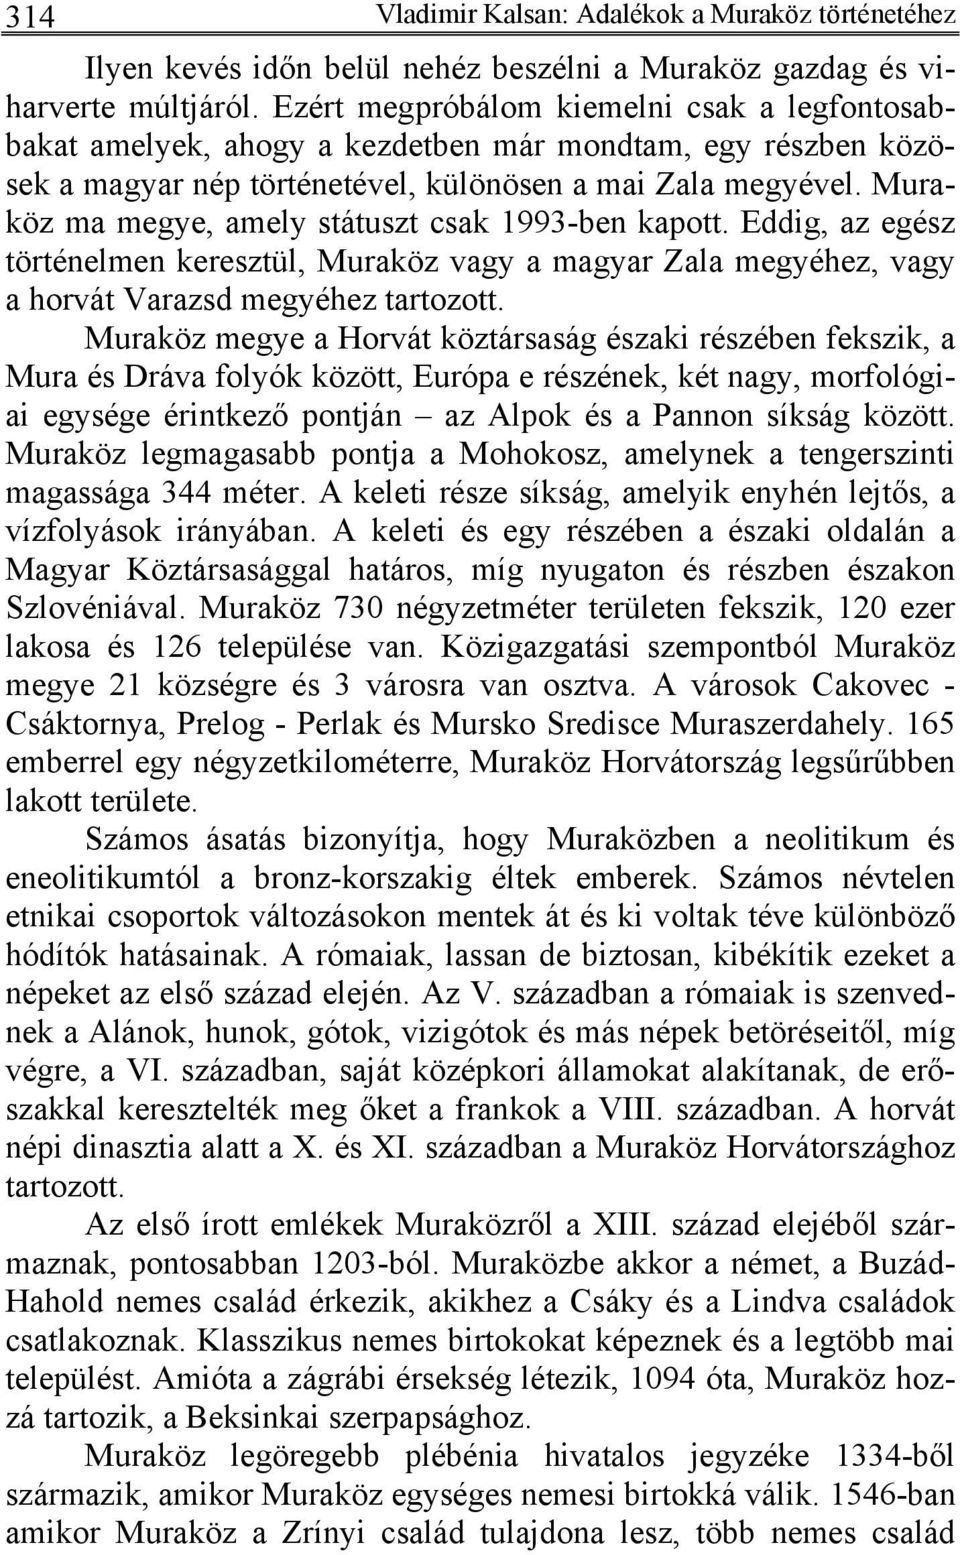 Muraköz ma megye, amely státuszt csak 1993-ben kapott. Eddig, az egész történelmen keresztül, Muraköz vagy a magyar Zala megyéhez, vagy a horvát Varazsd megyéhez tartozott.